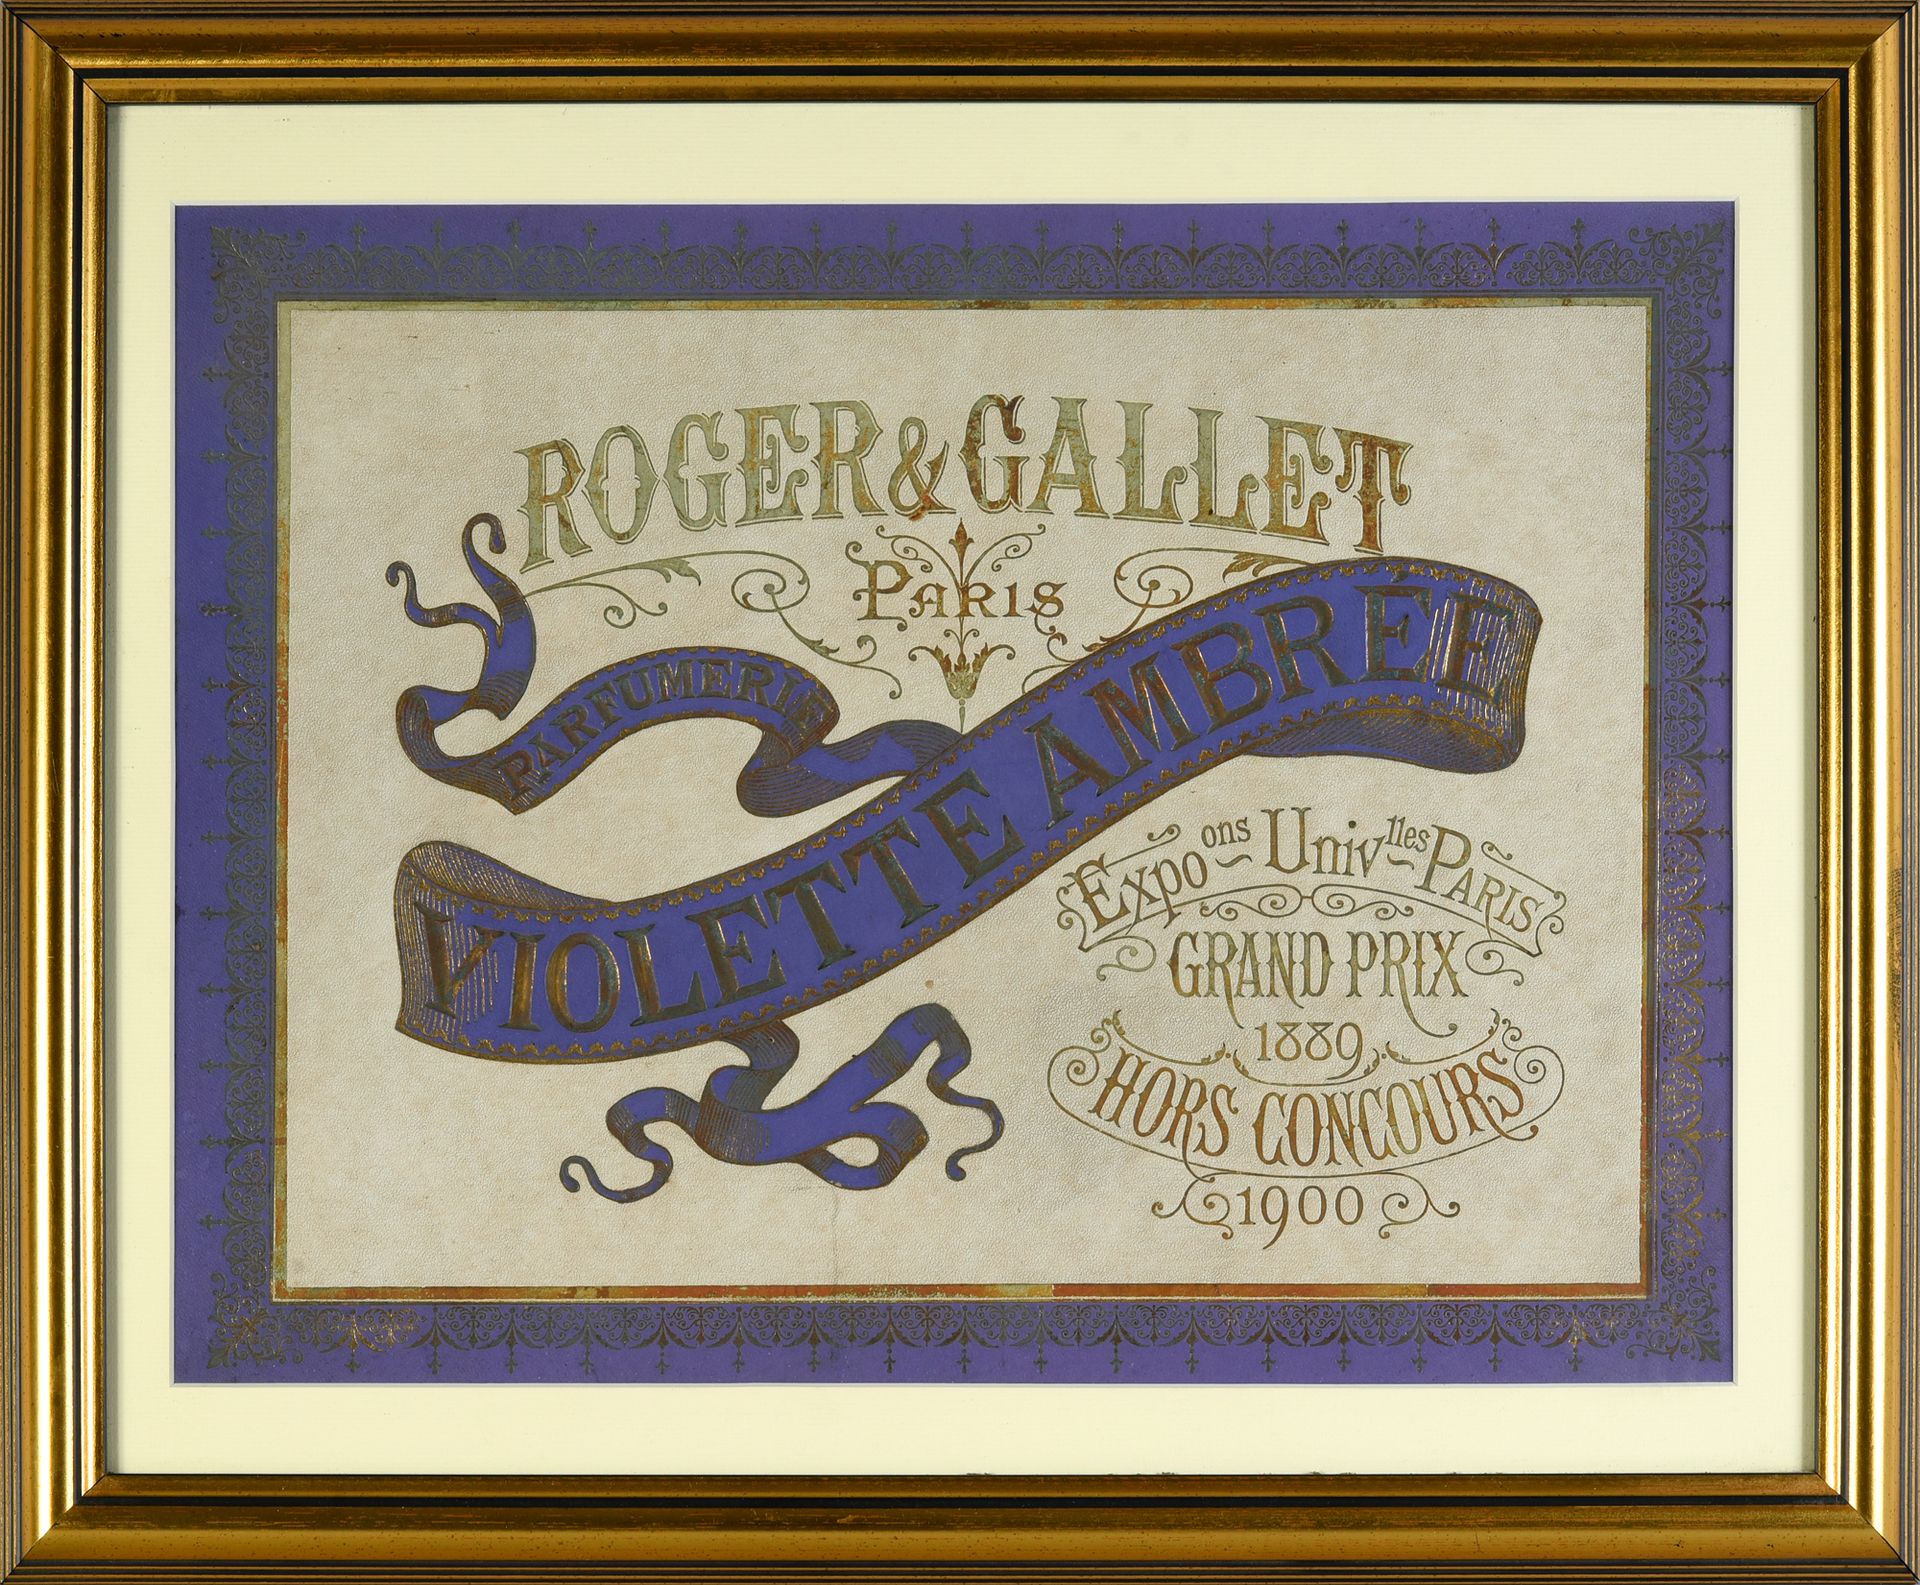 Roger & Gallet - «Violette Ambrée» - (1905) 
Werbetafel in chromolithographierte&hellip;